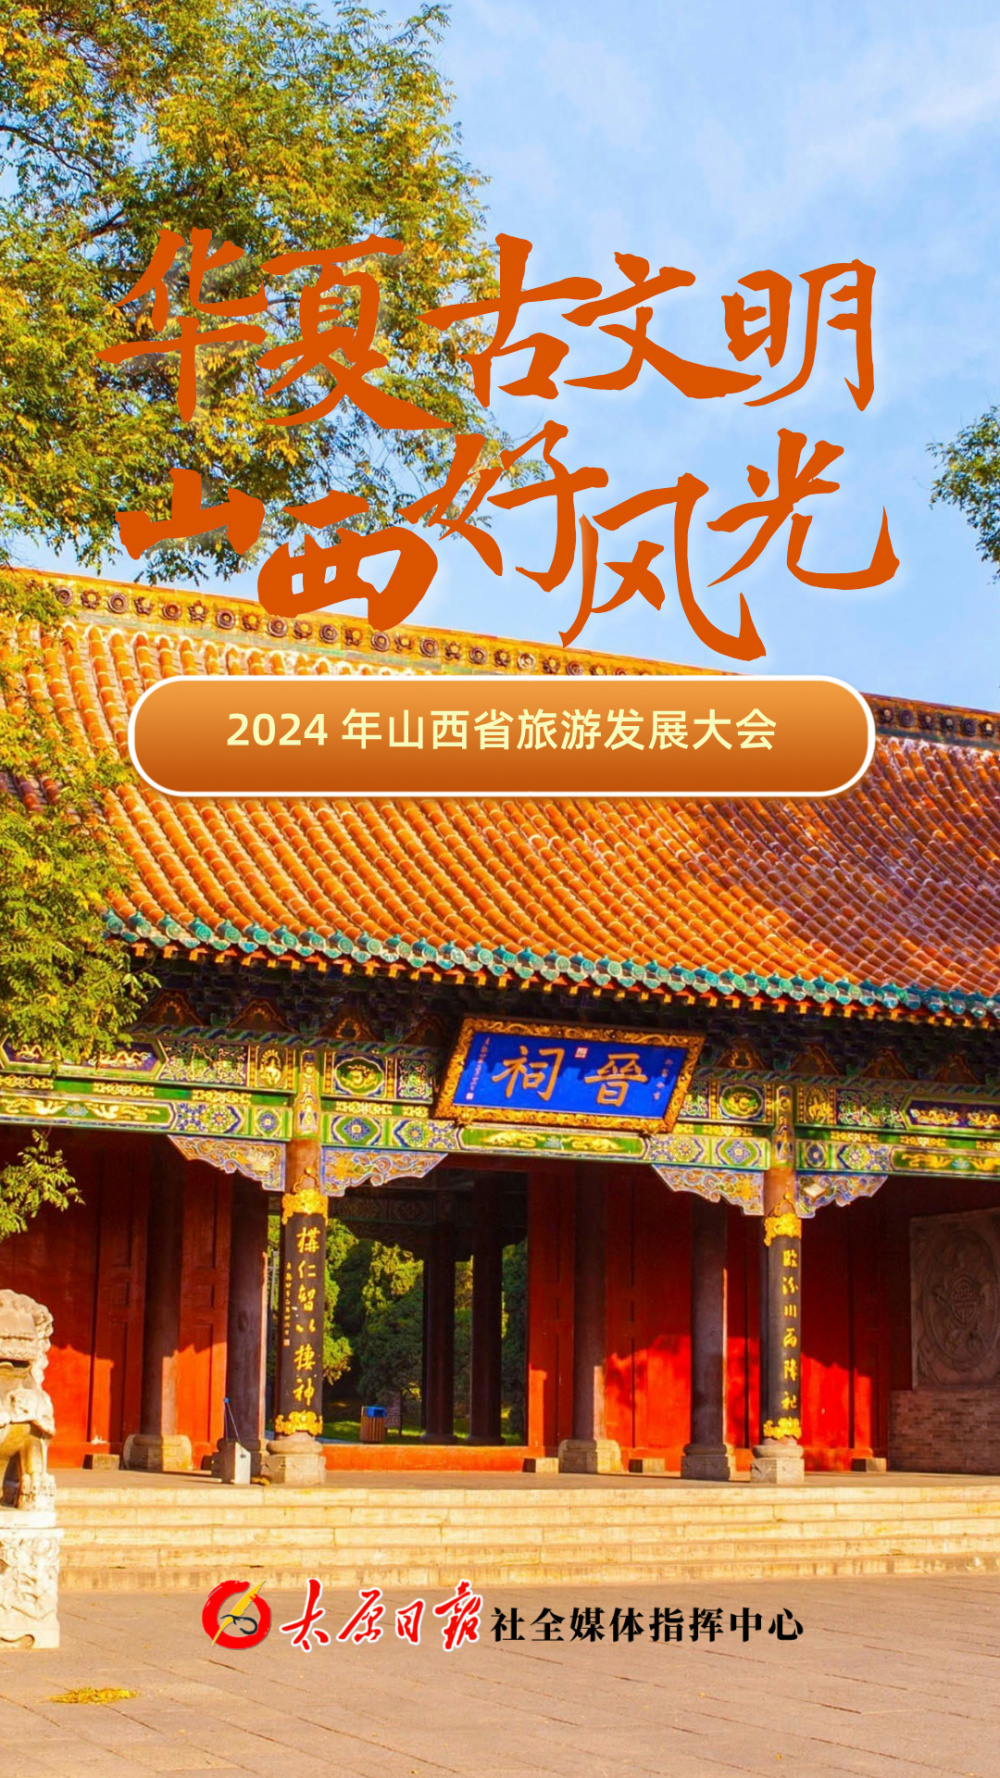 【海报组】2024年山西省旅游发展大会